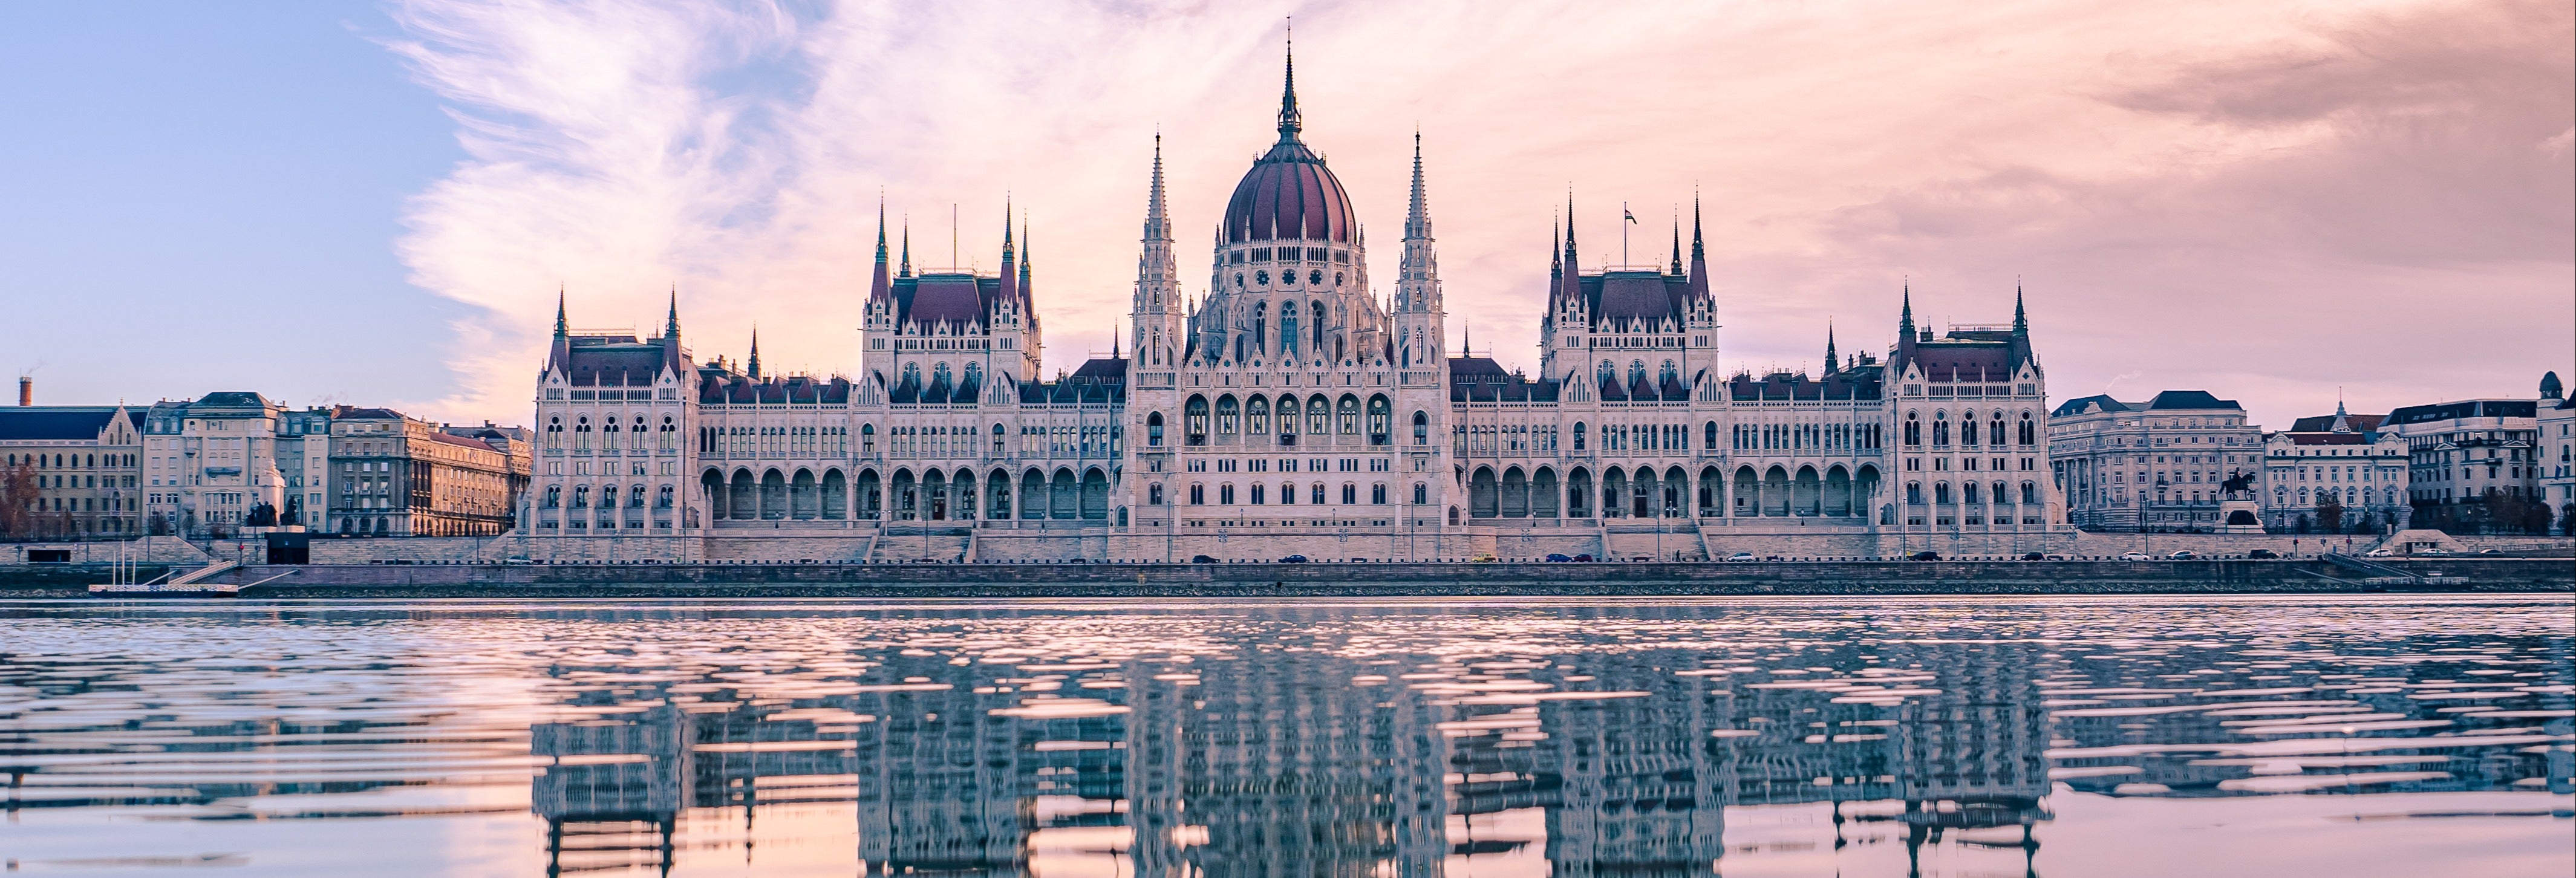 Visita guiada pelo Parlamento de Budapeste